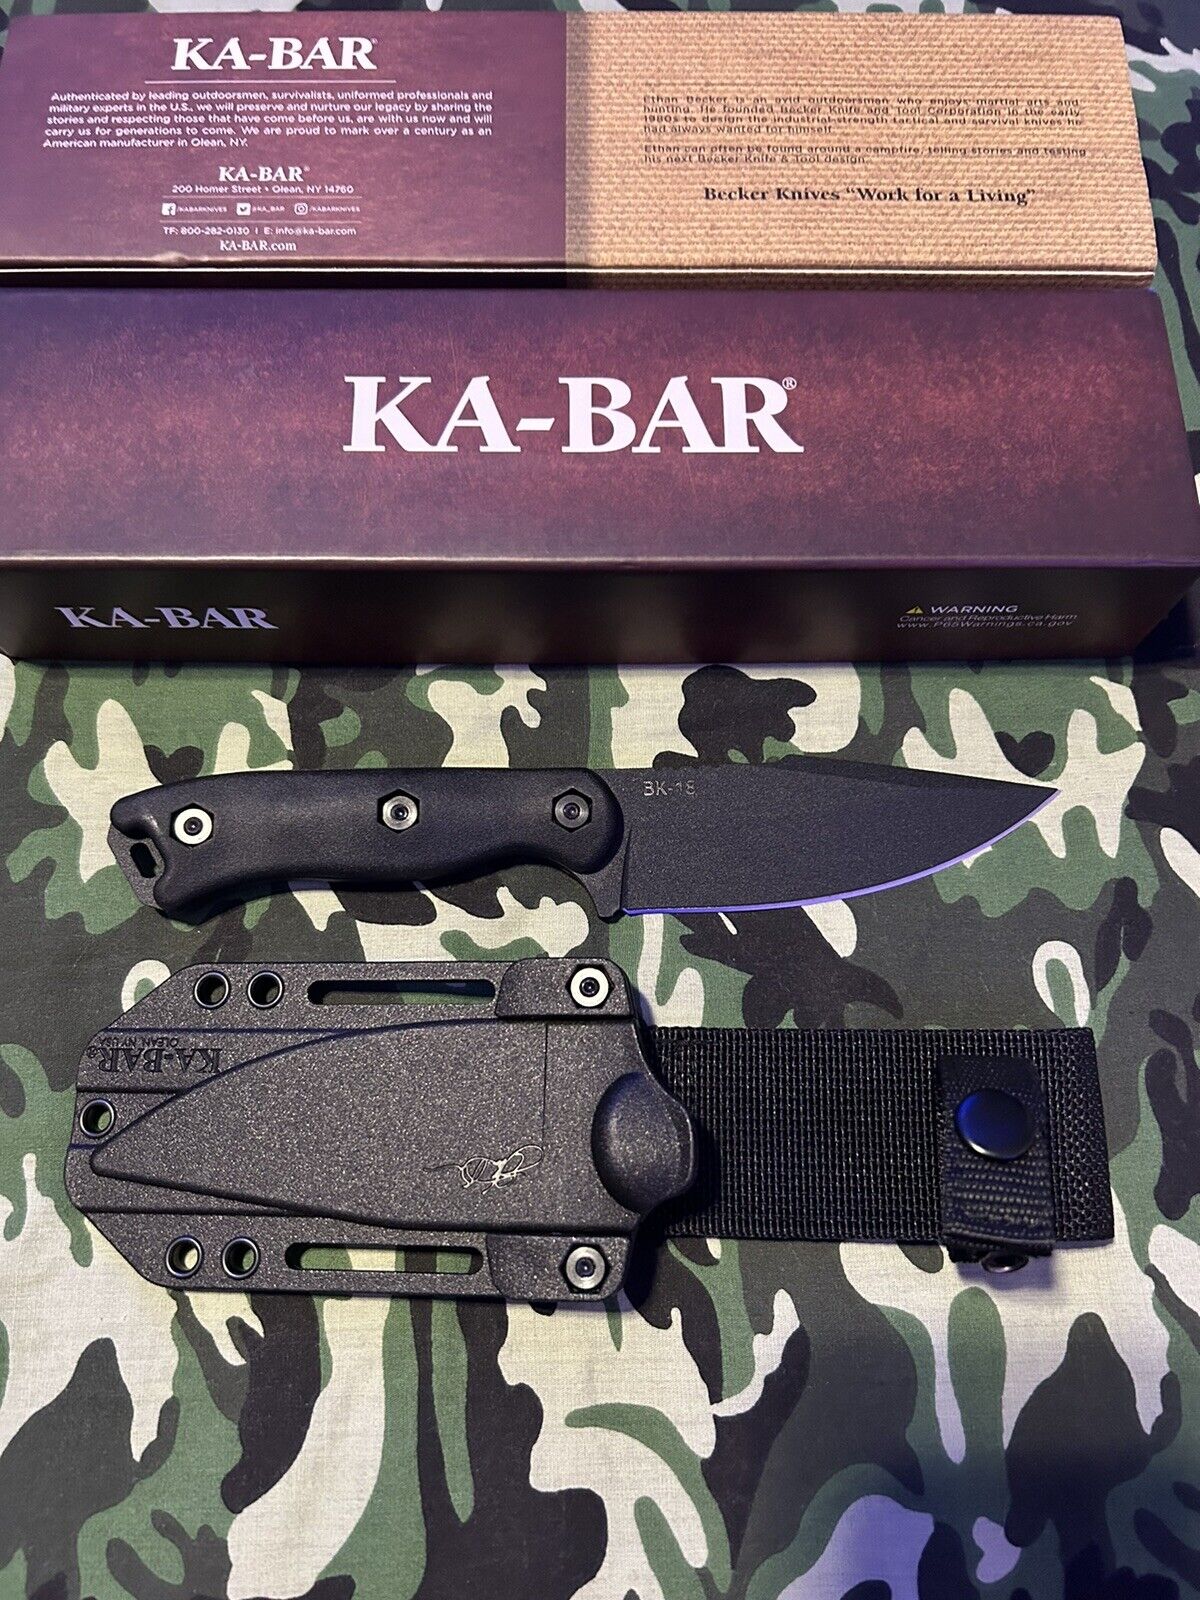 Ka-Bar BK18 Becker Harpoon Knife with Celcon Sheath 4.5